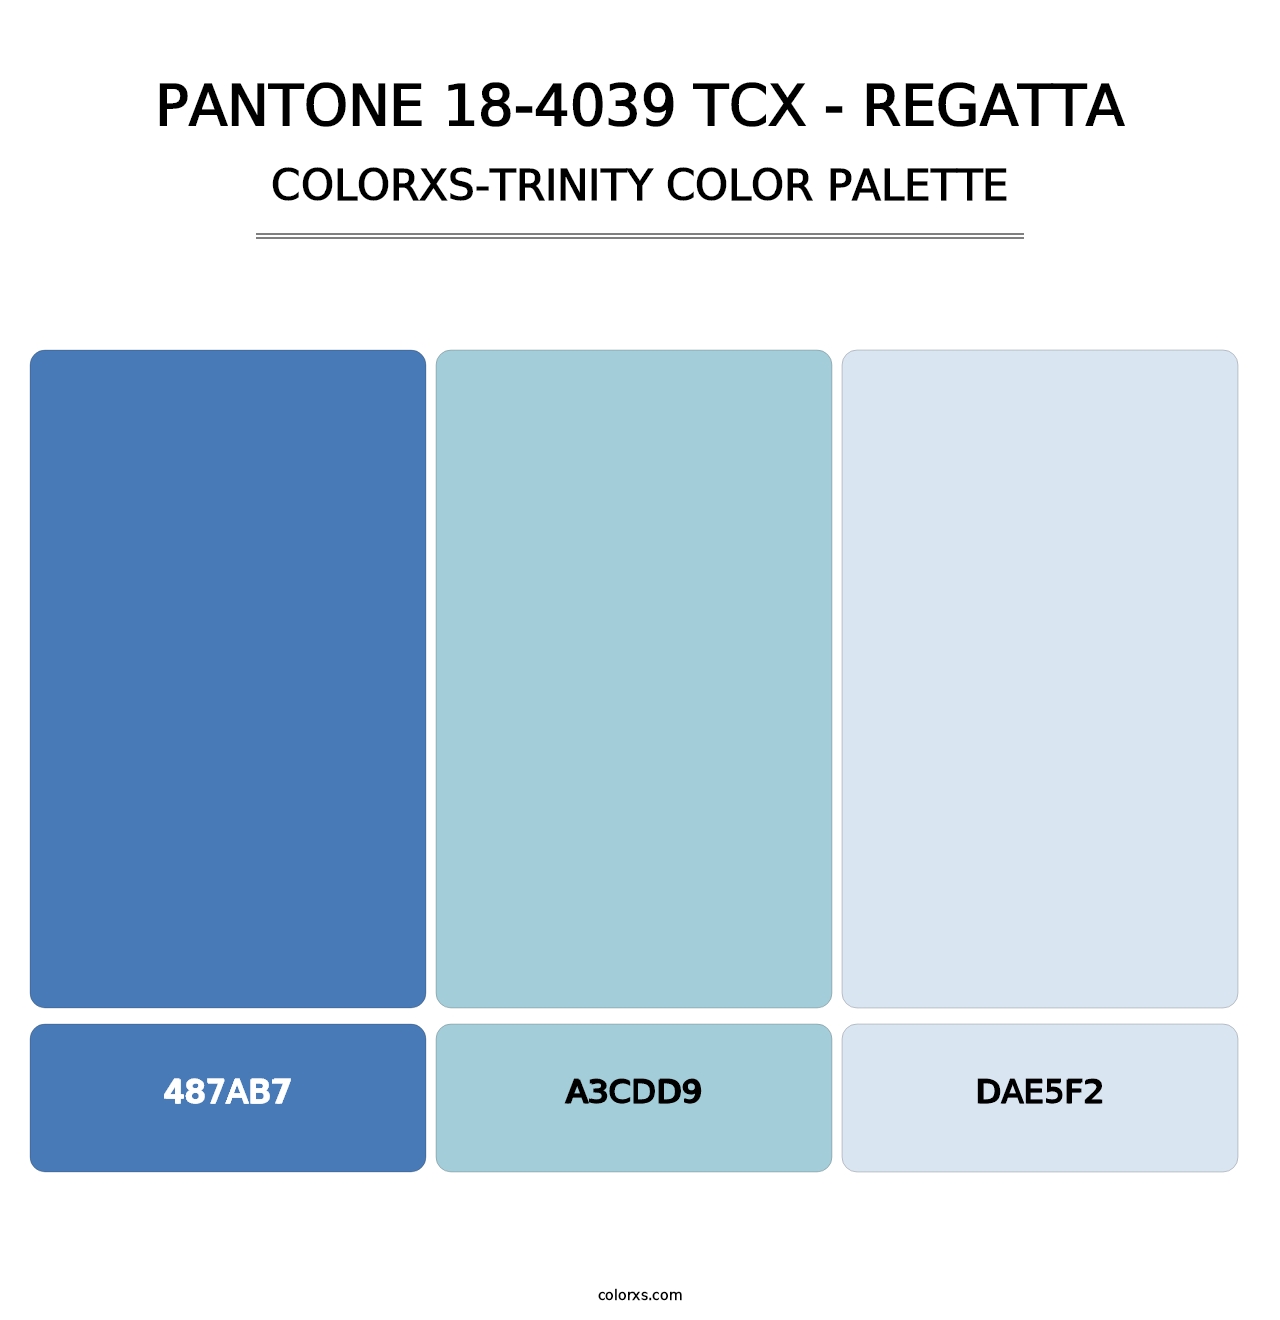 PANTONE 18-4039 TCX - Regatta - Colorxs Trinity Palette